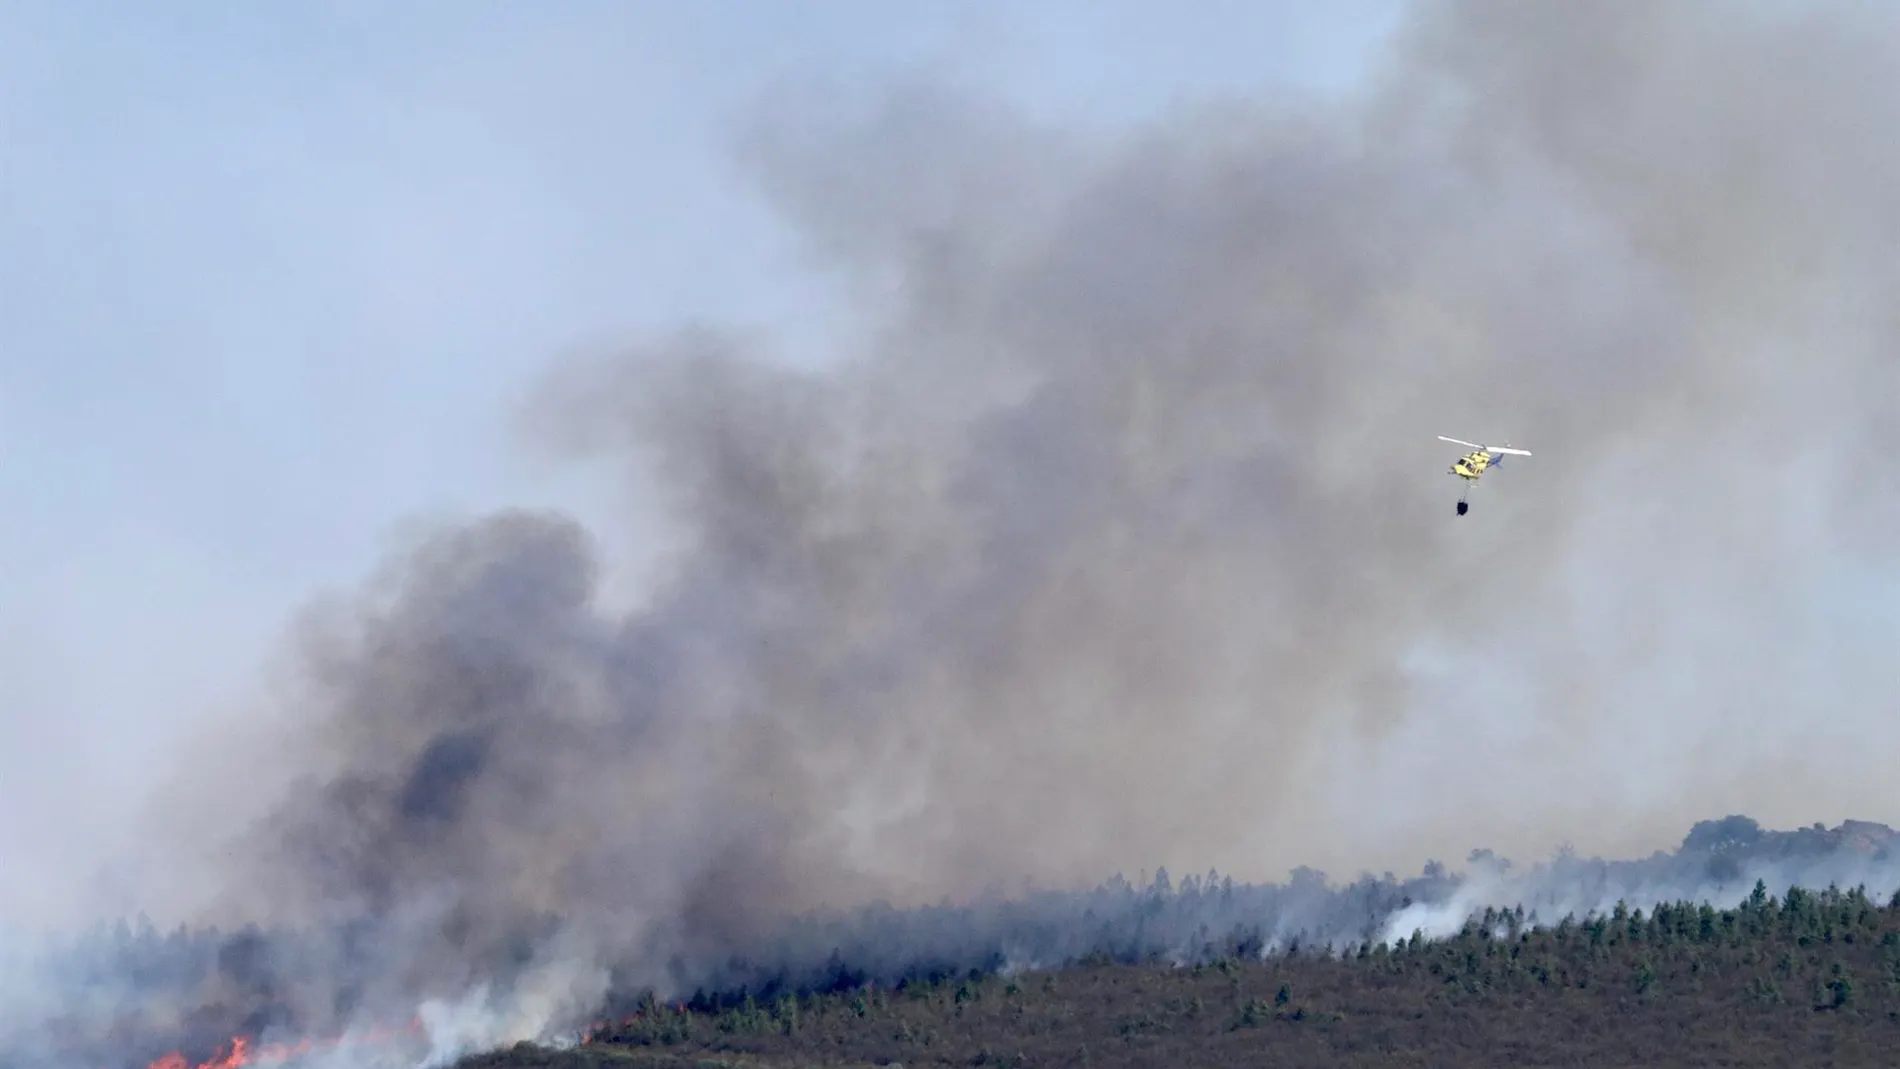 Vista del incendio forestal en la comarca de Tábara (Zamora)